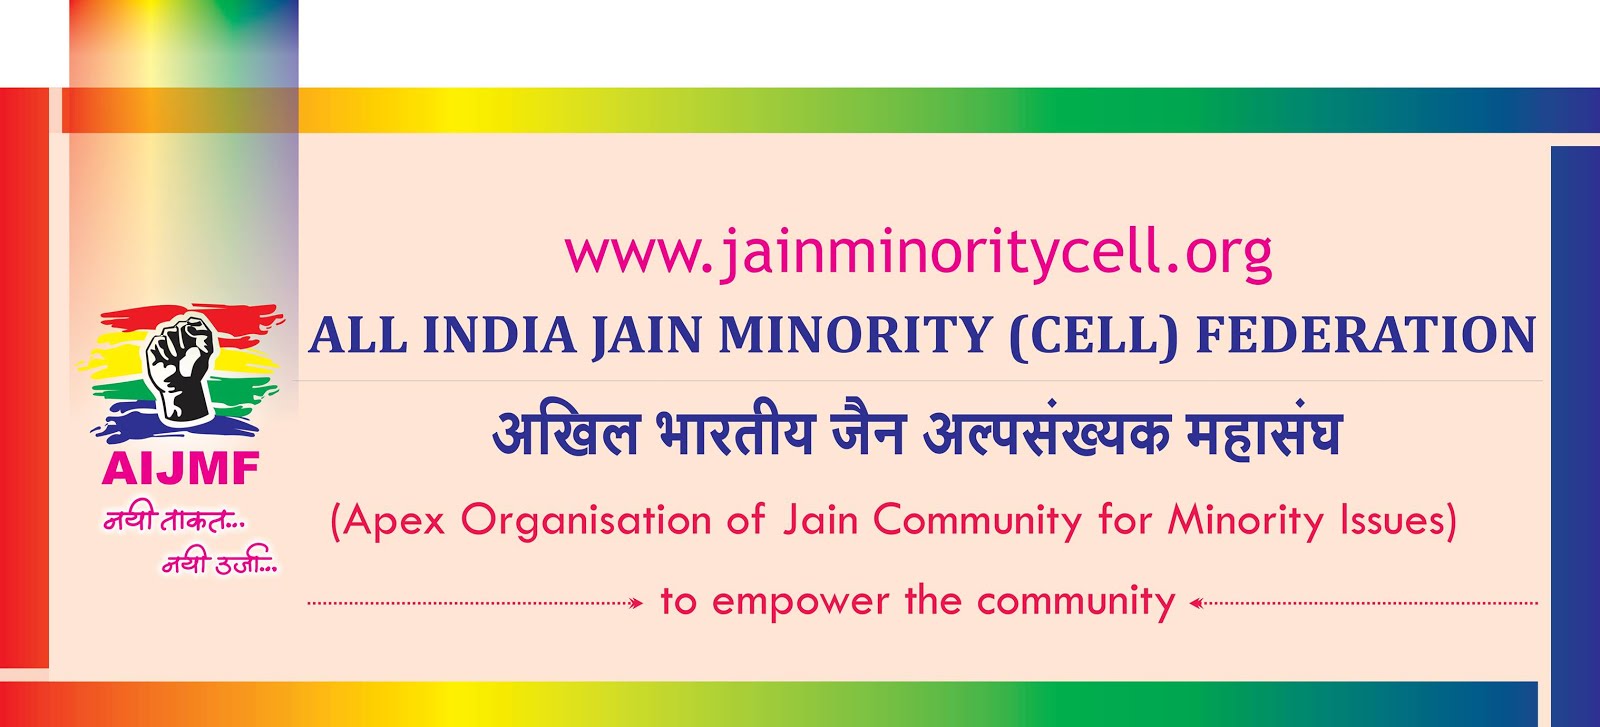 ALL INDIA JAIN MINORITY CELL